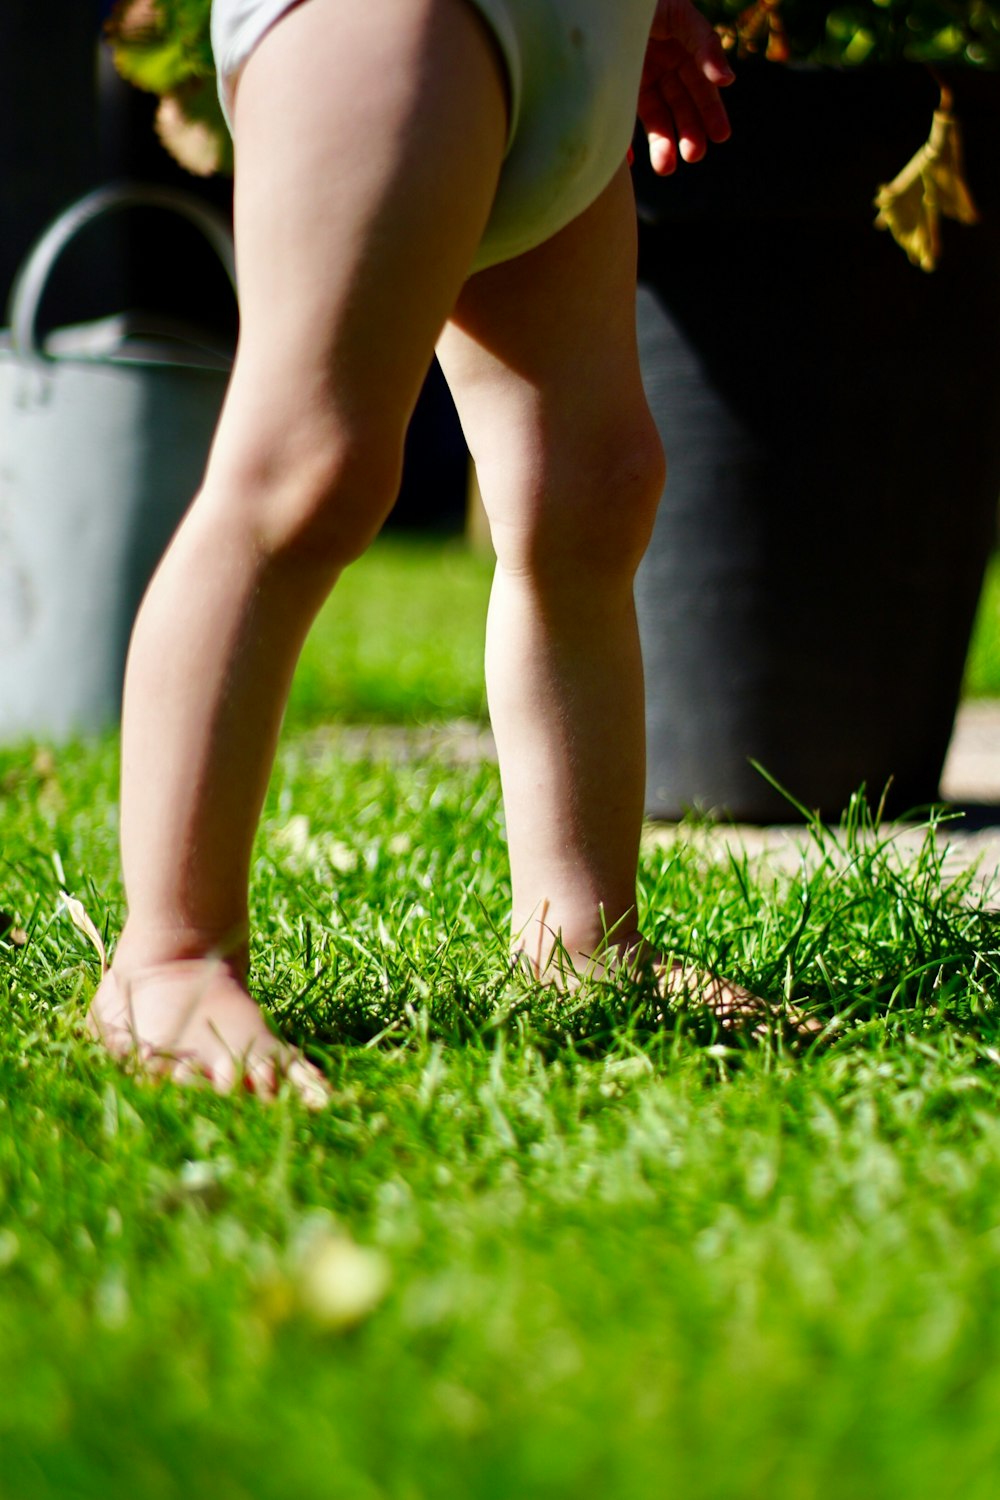 toddler wearing underwear standing on grass